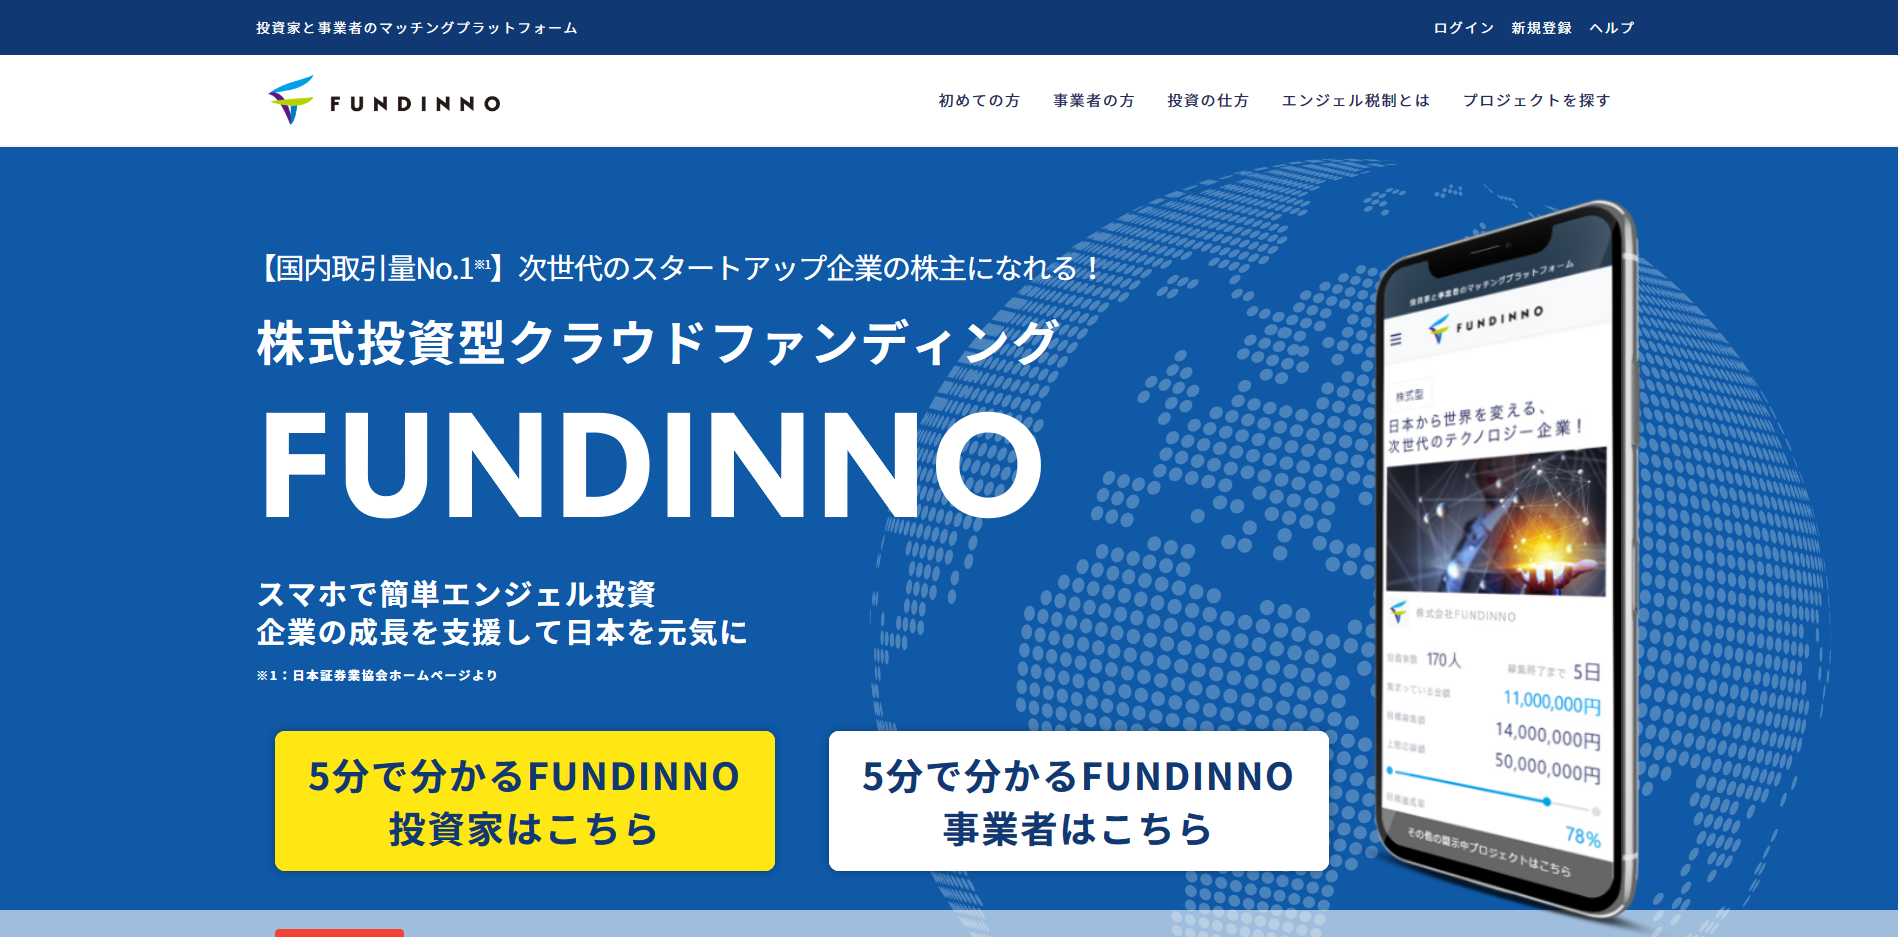 FUNDINNO(ファンディーノ)の画像